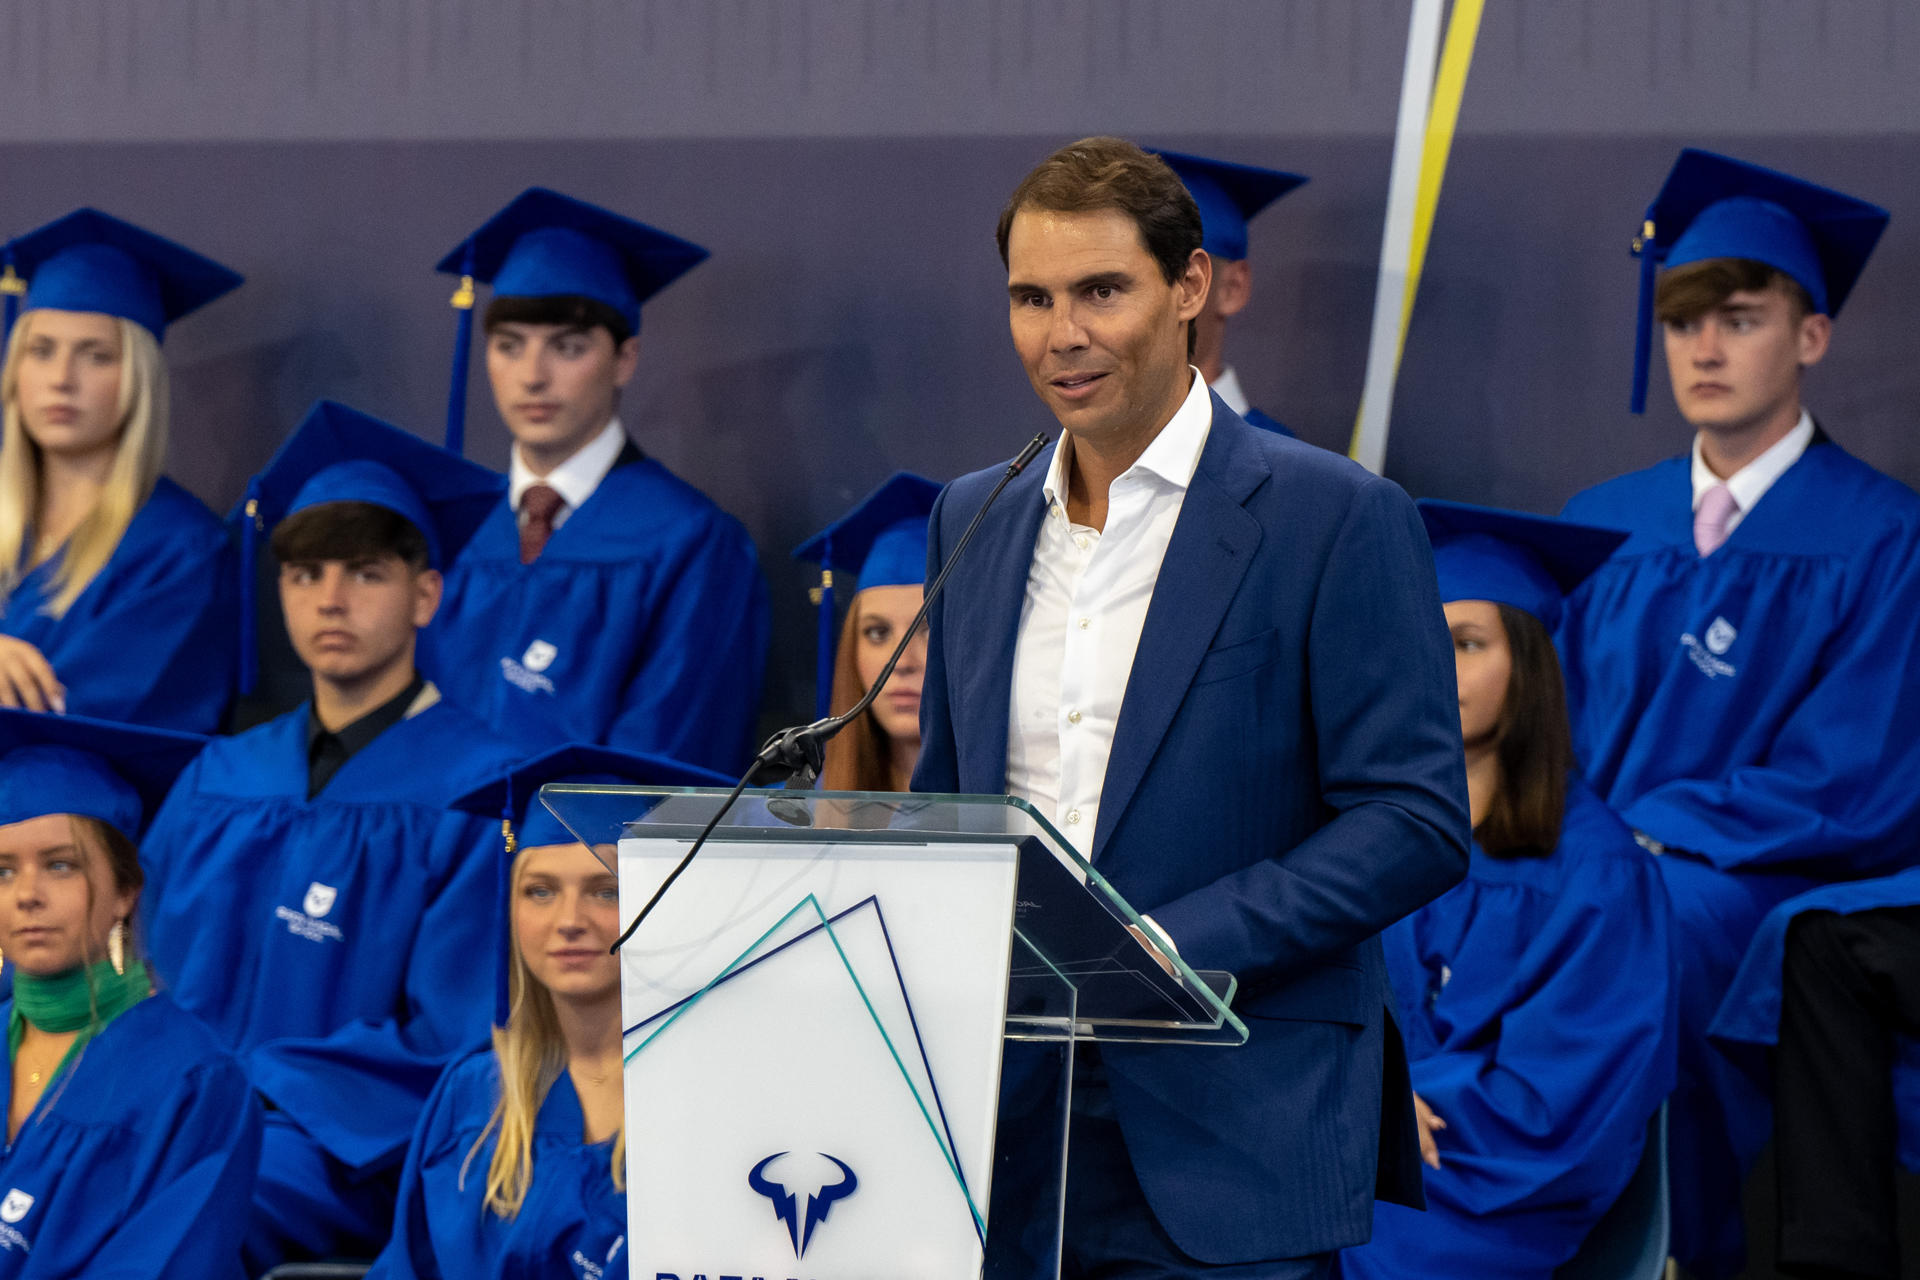 Nadal gradúa a su alumnos junto a Iga Swiatek y felicita a Djokovic por sus 23 “grandes”